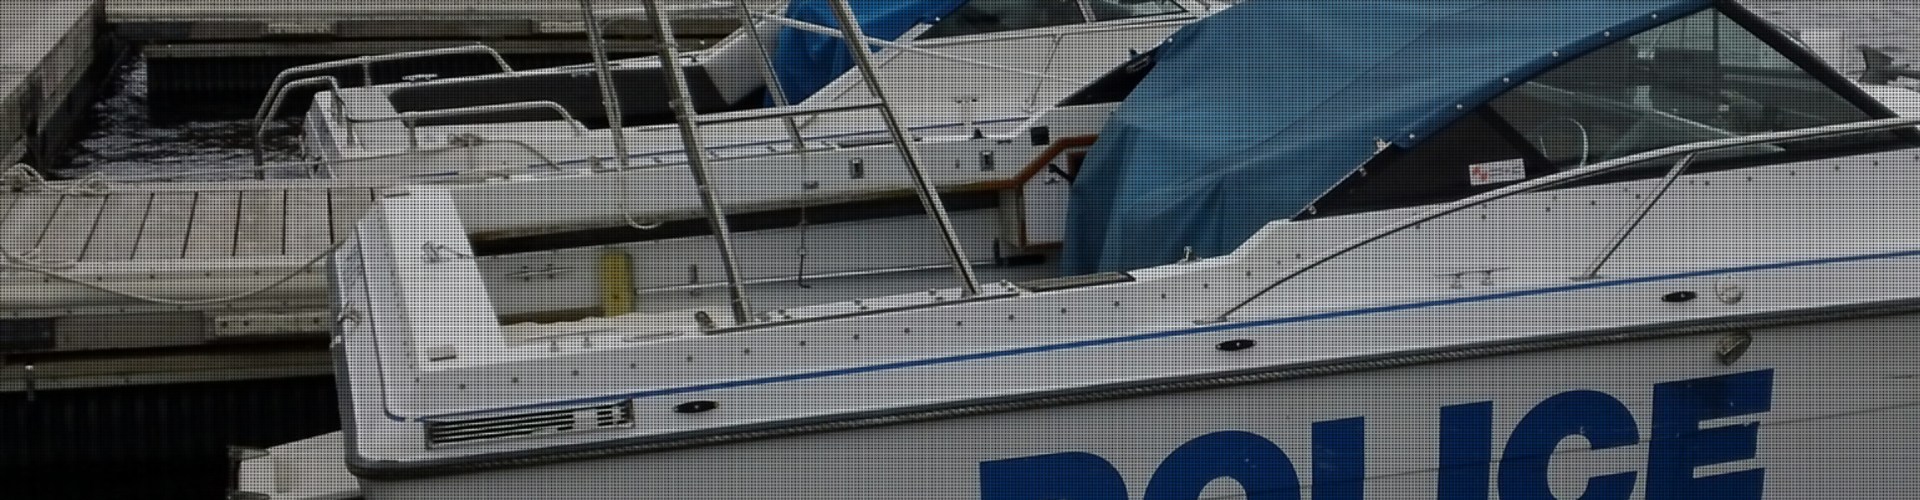 OPP Police boat at dock